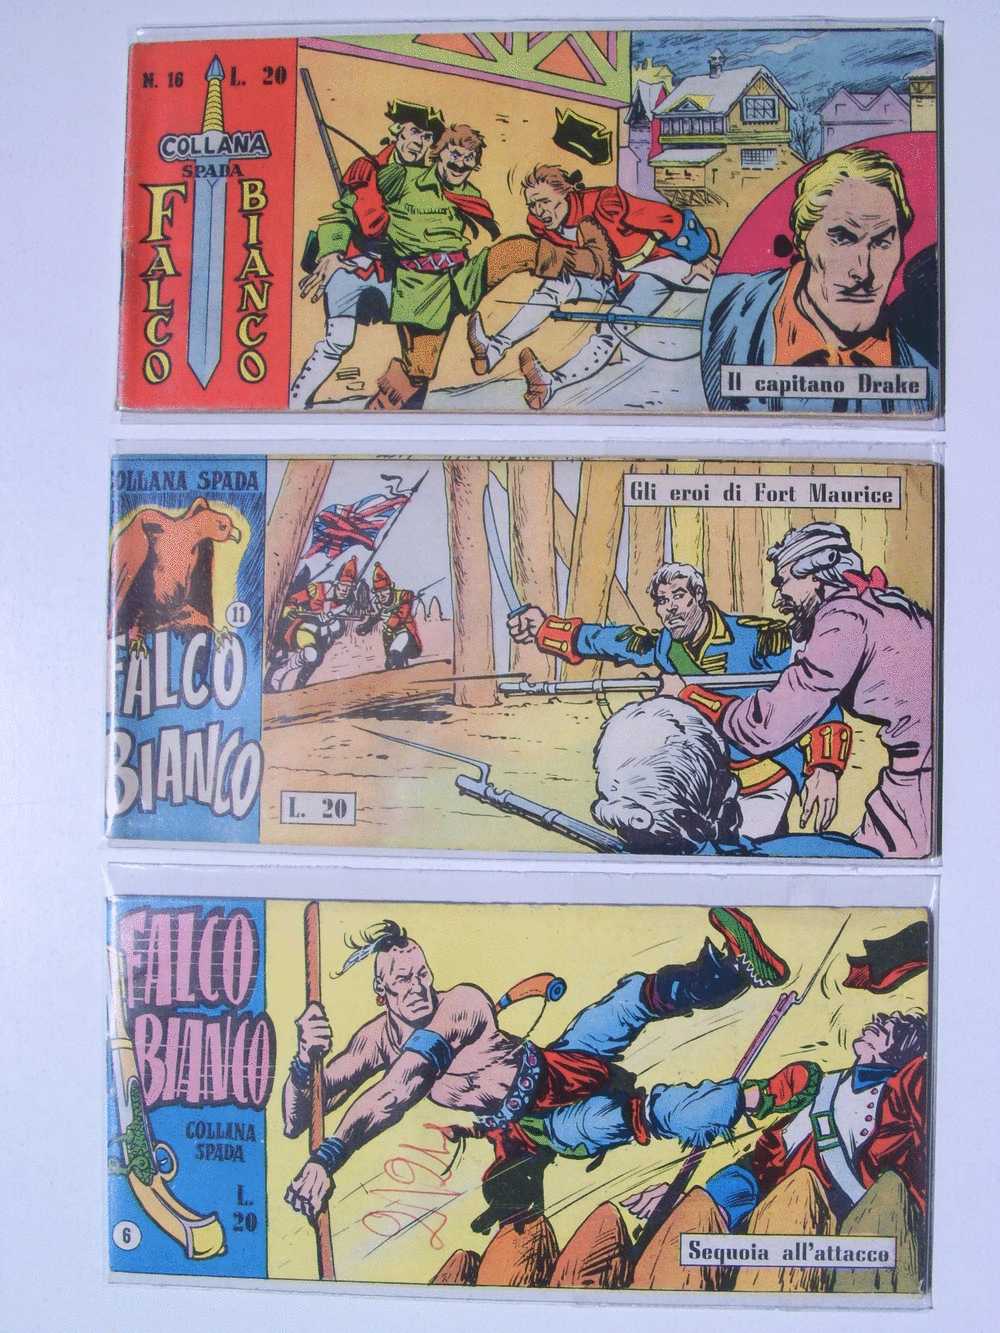 LOTTO 3 STRISCE ORIGINALI FALCO BIANCO - COLLANA SPADA - Foto Dentro - Comics 1930-50